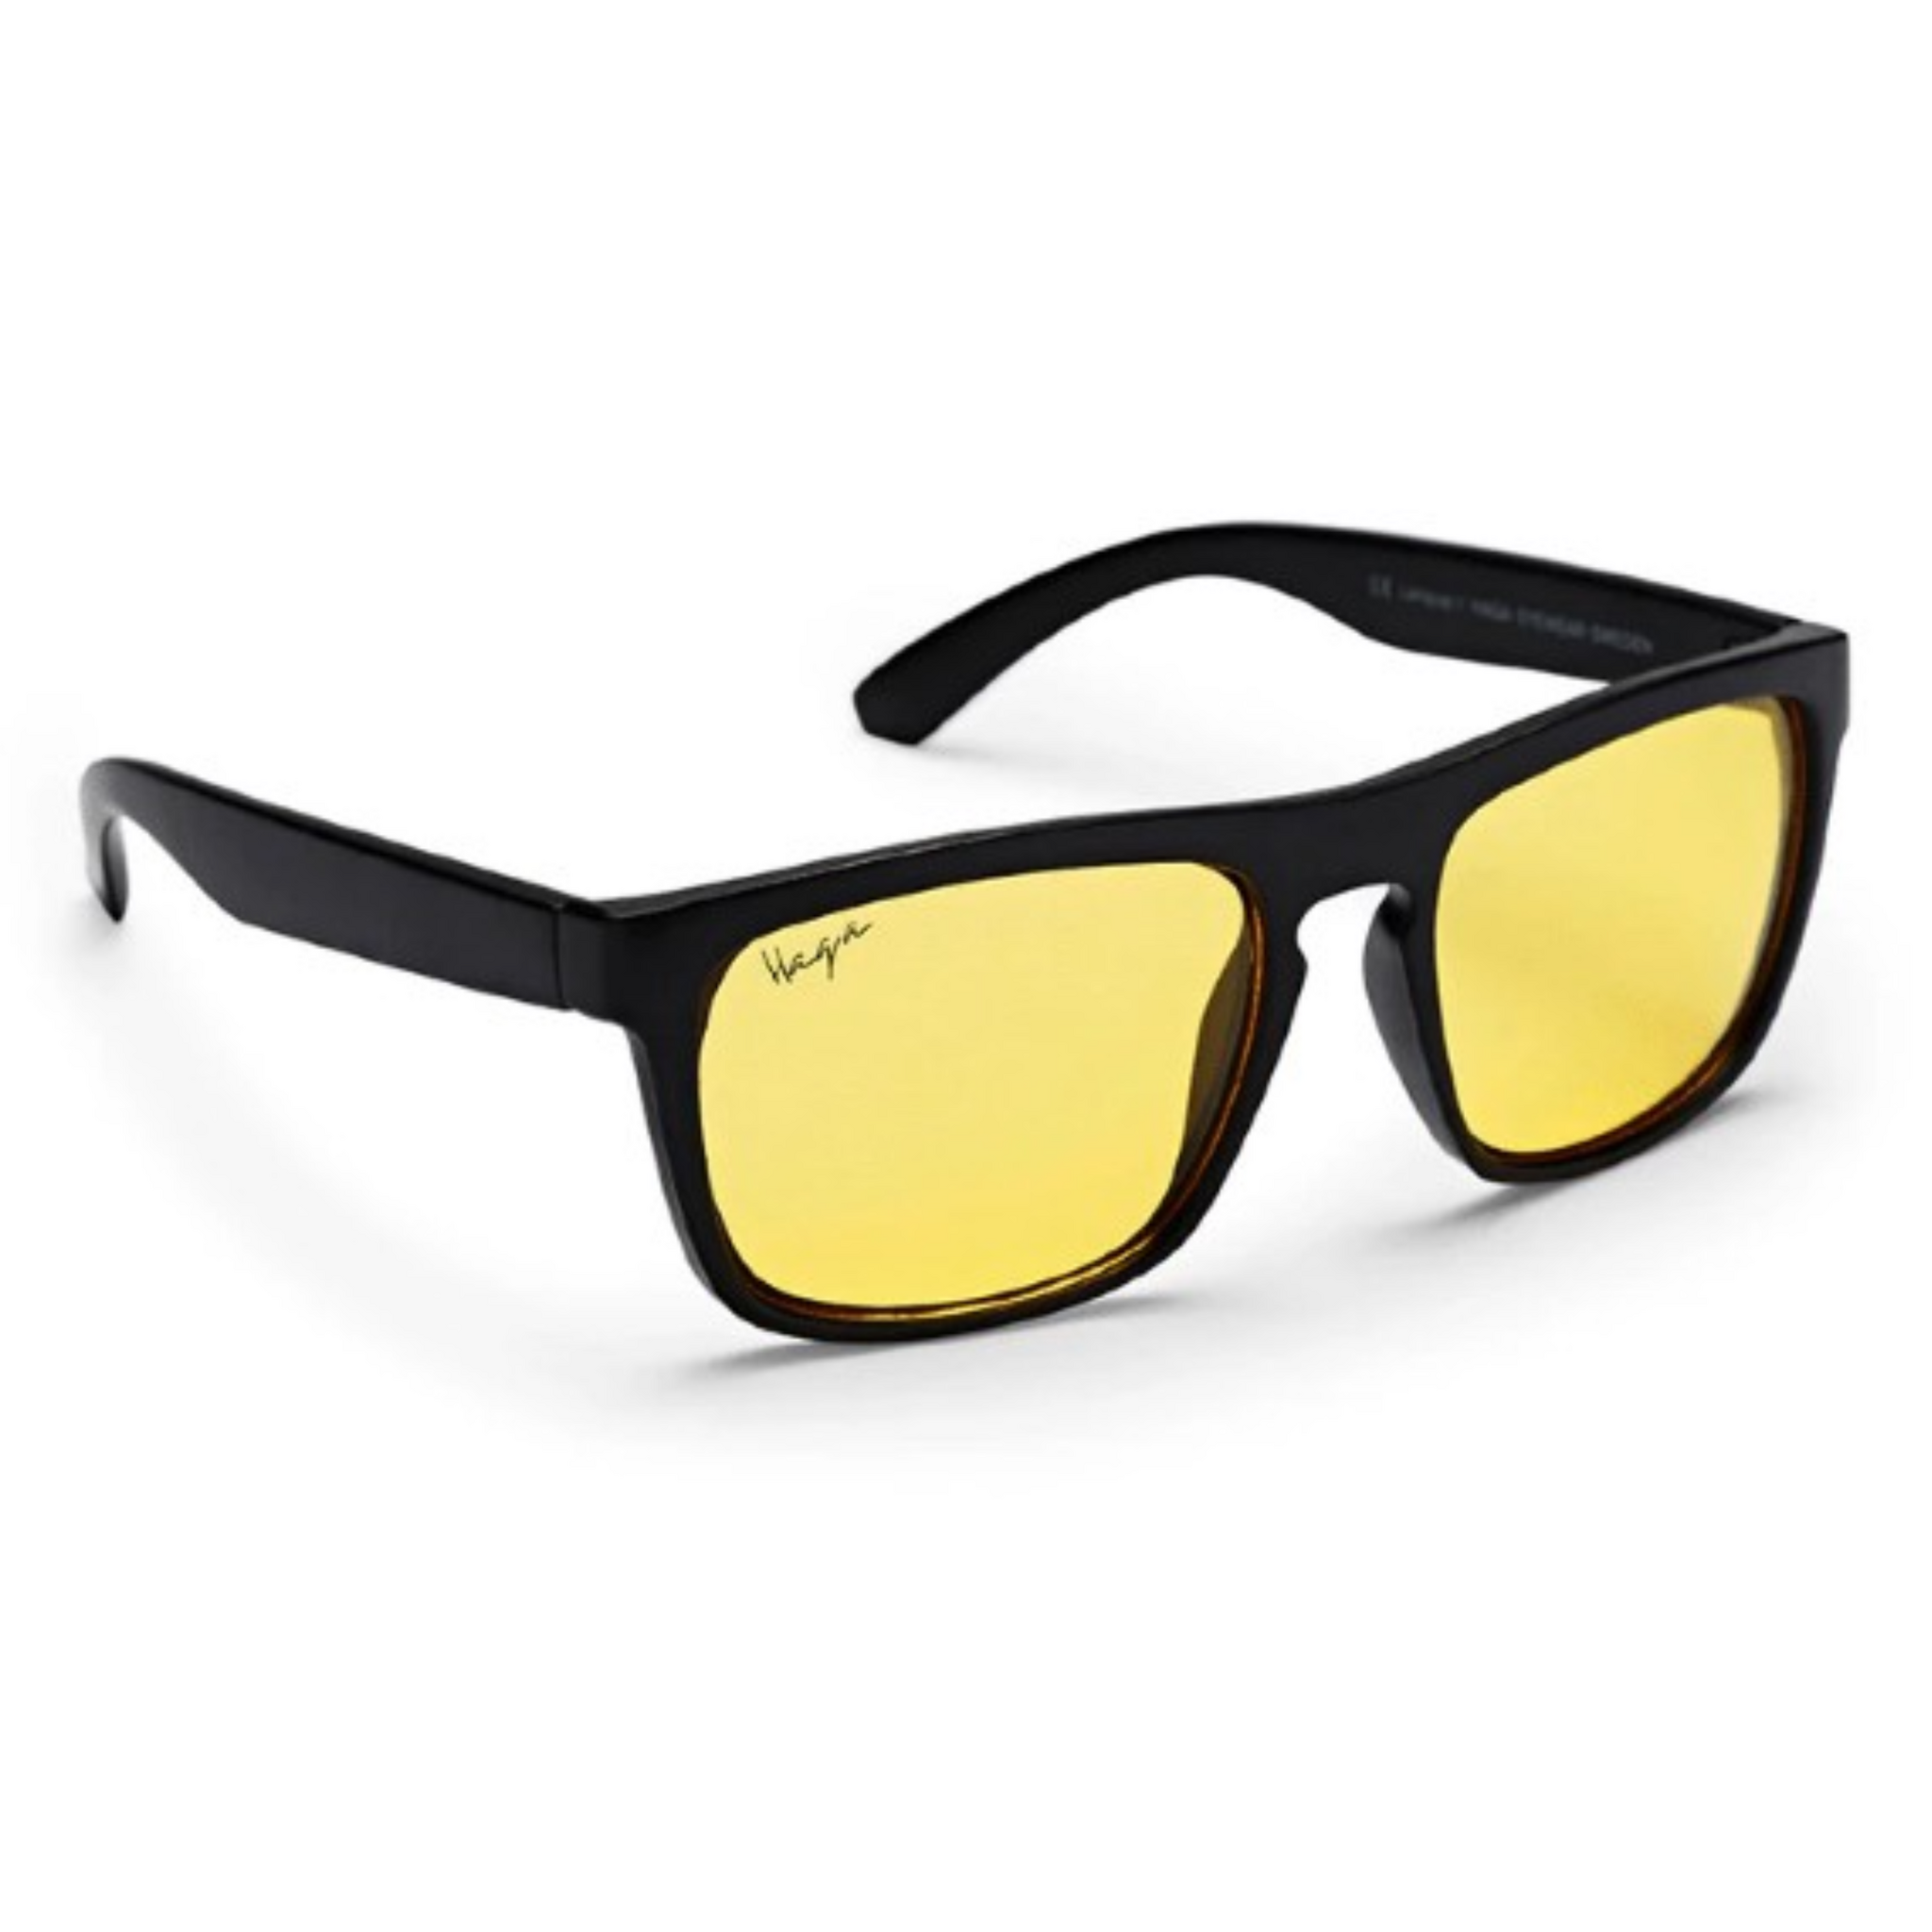 Haga Eyewear Tampa Yellow lens